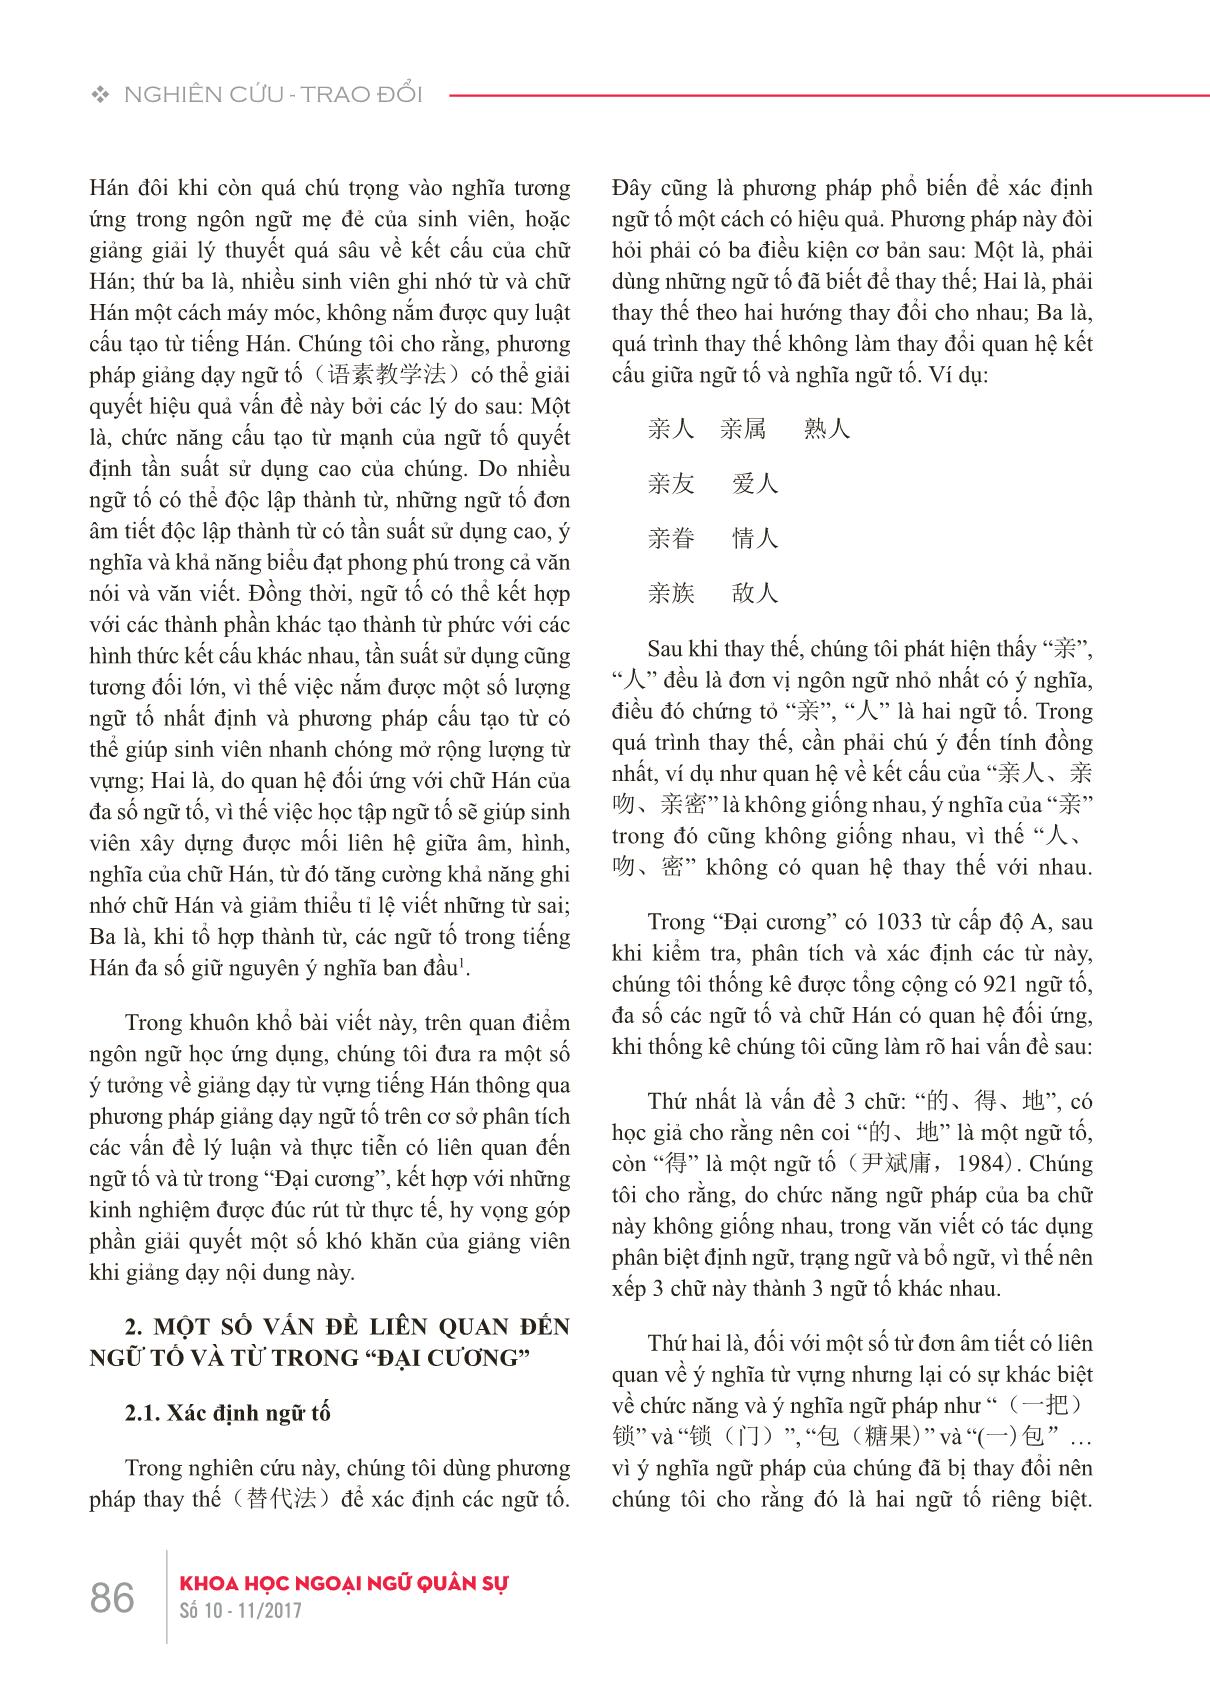 Bàn về dạy từ vựng tiếng Hán thông qua phương pháp giảng dạy ngữ tố trang 2